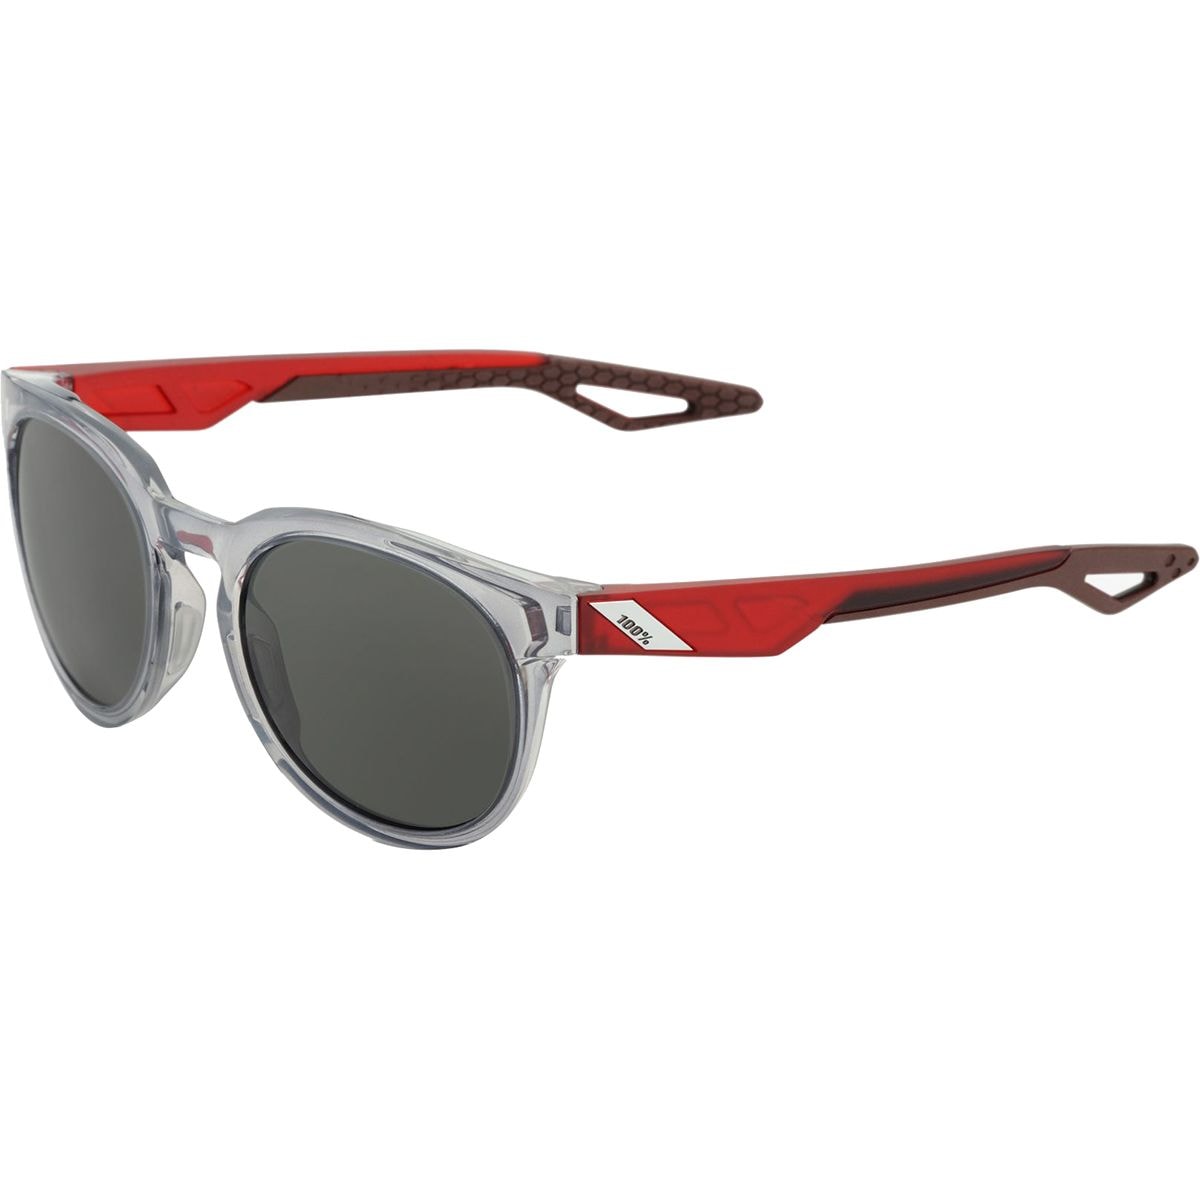 100% Campo Sunglasses - Men's